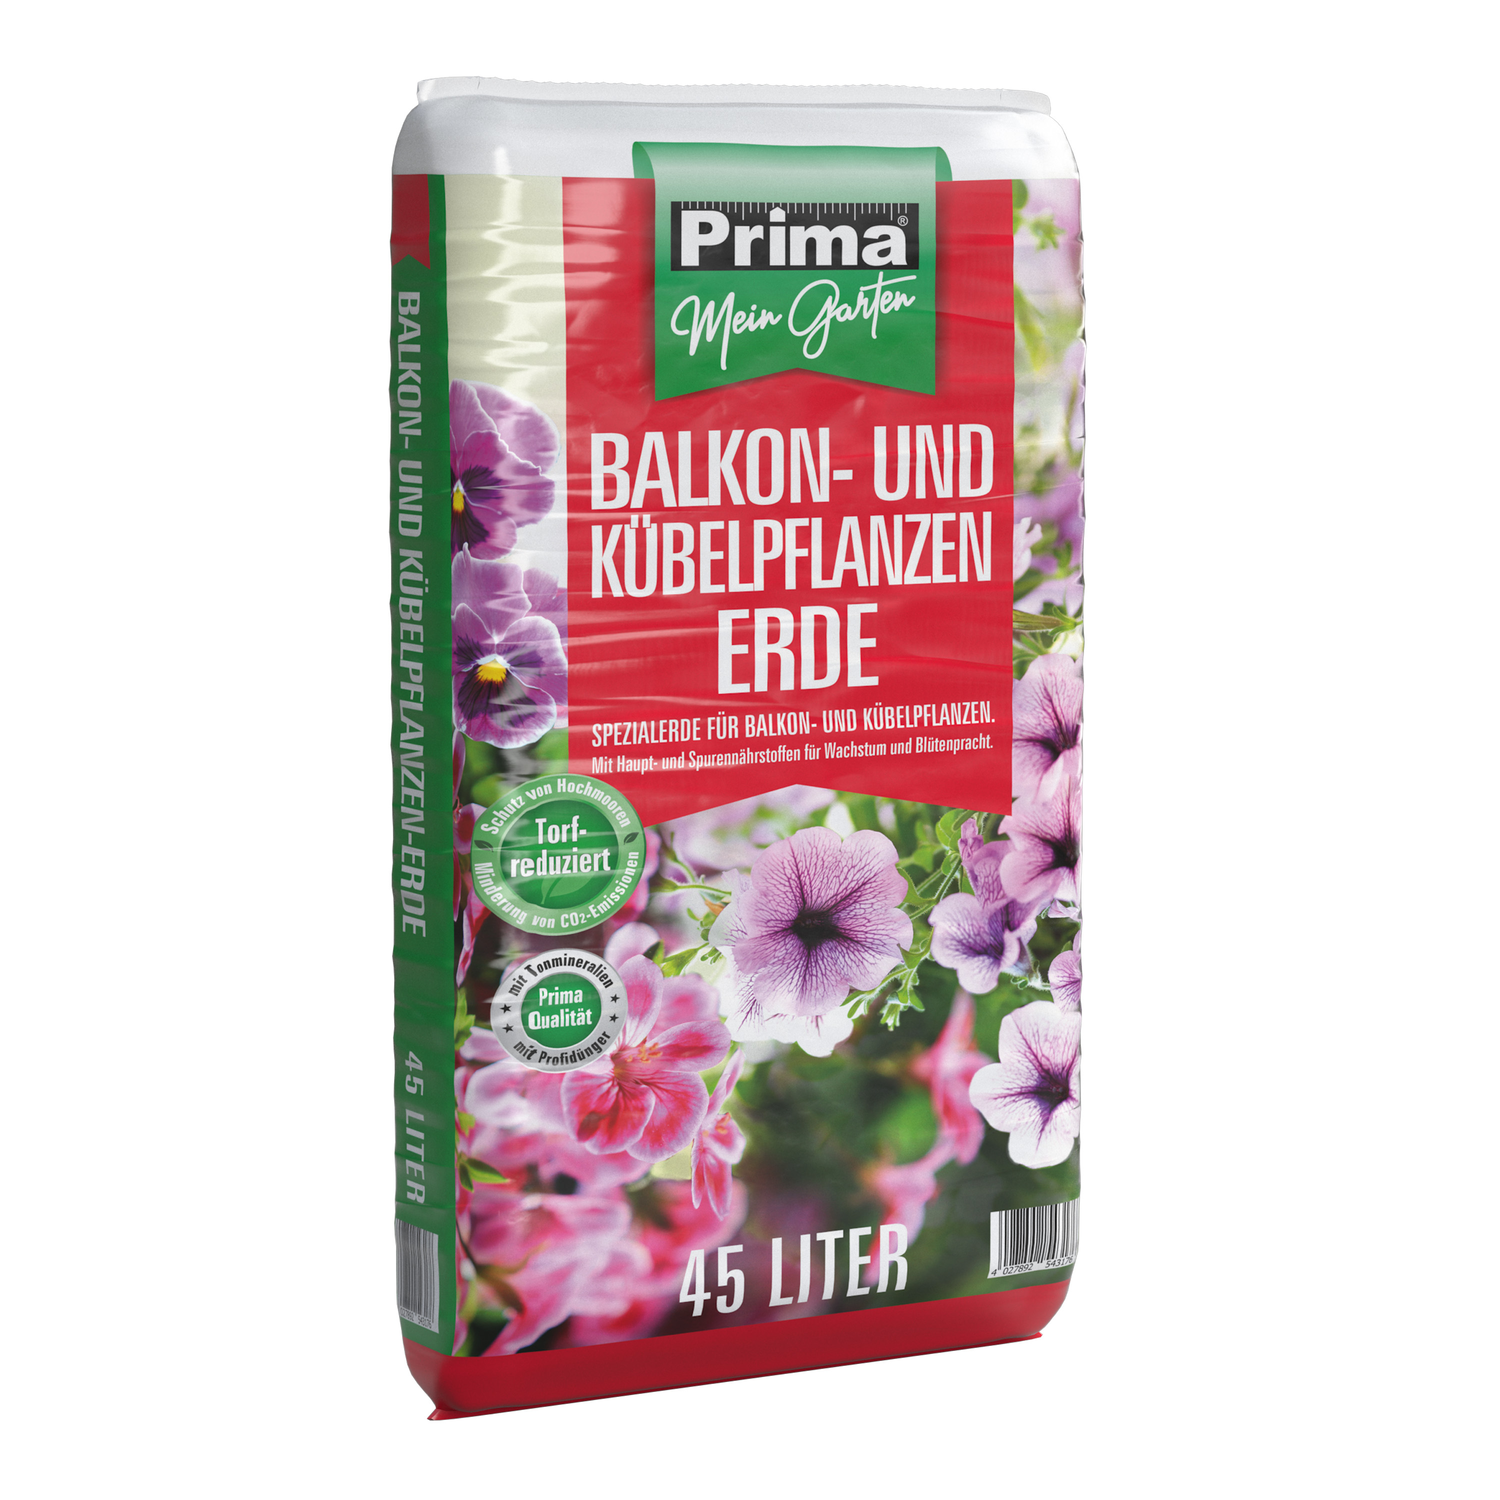 PRIMA Balkon- und Kübelpflanzenerde 45 Liter, torfreduziert